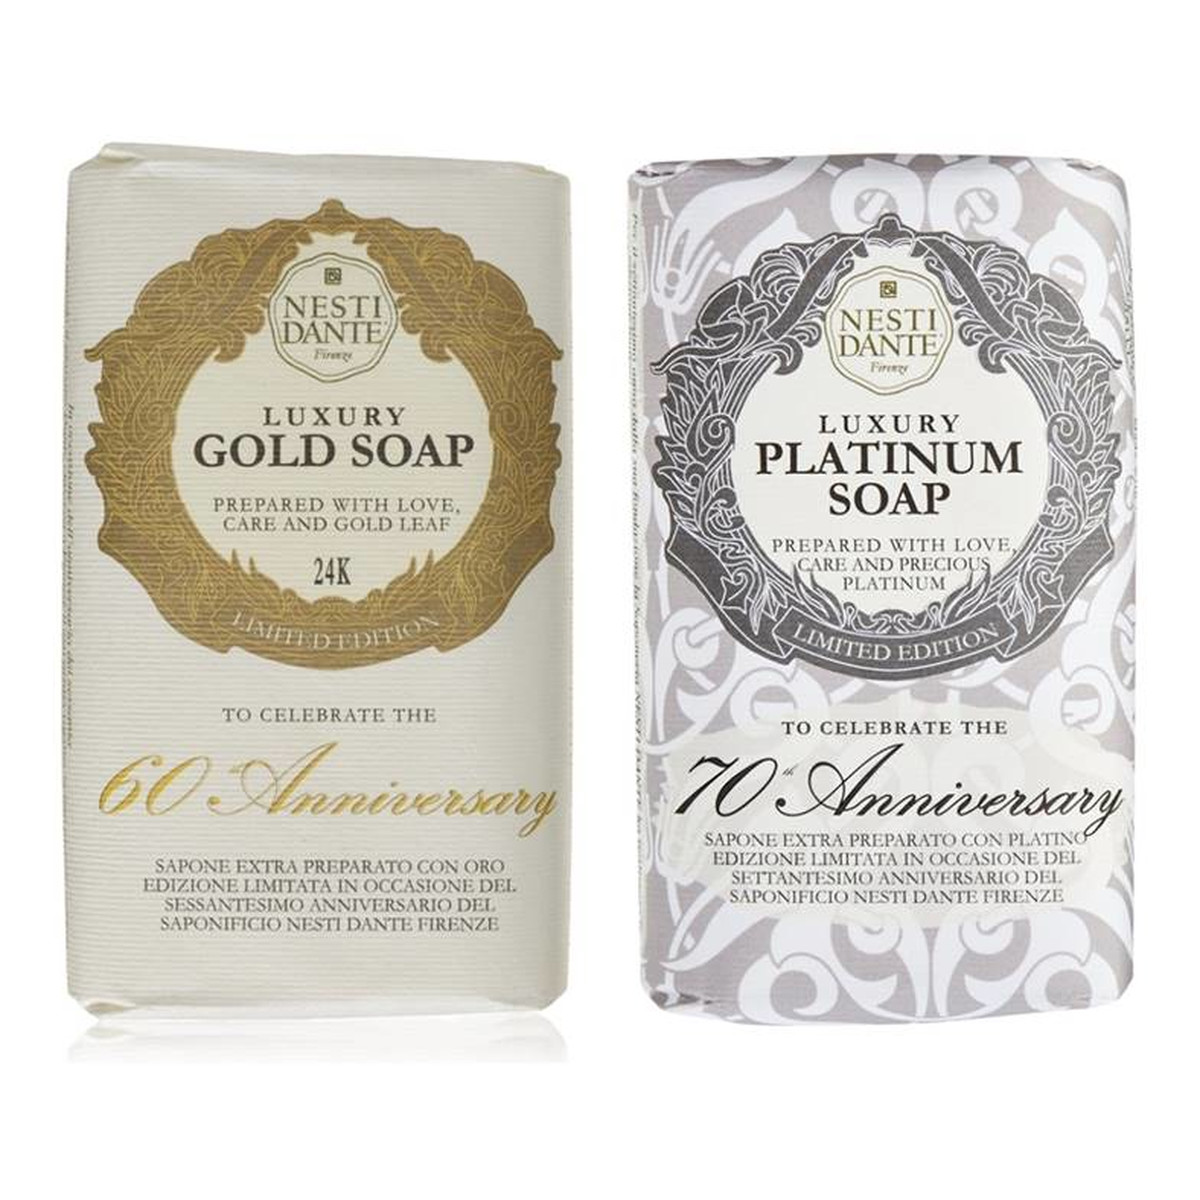 Nesti Dante Firenze zestaw mydeł toaletowych Luxury Platinum Soap 250g + Luxury Gold Soap 250g